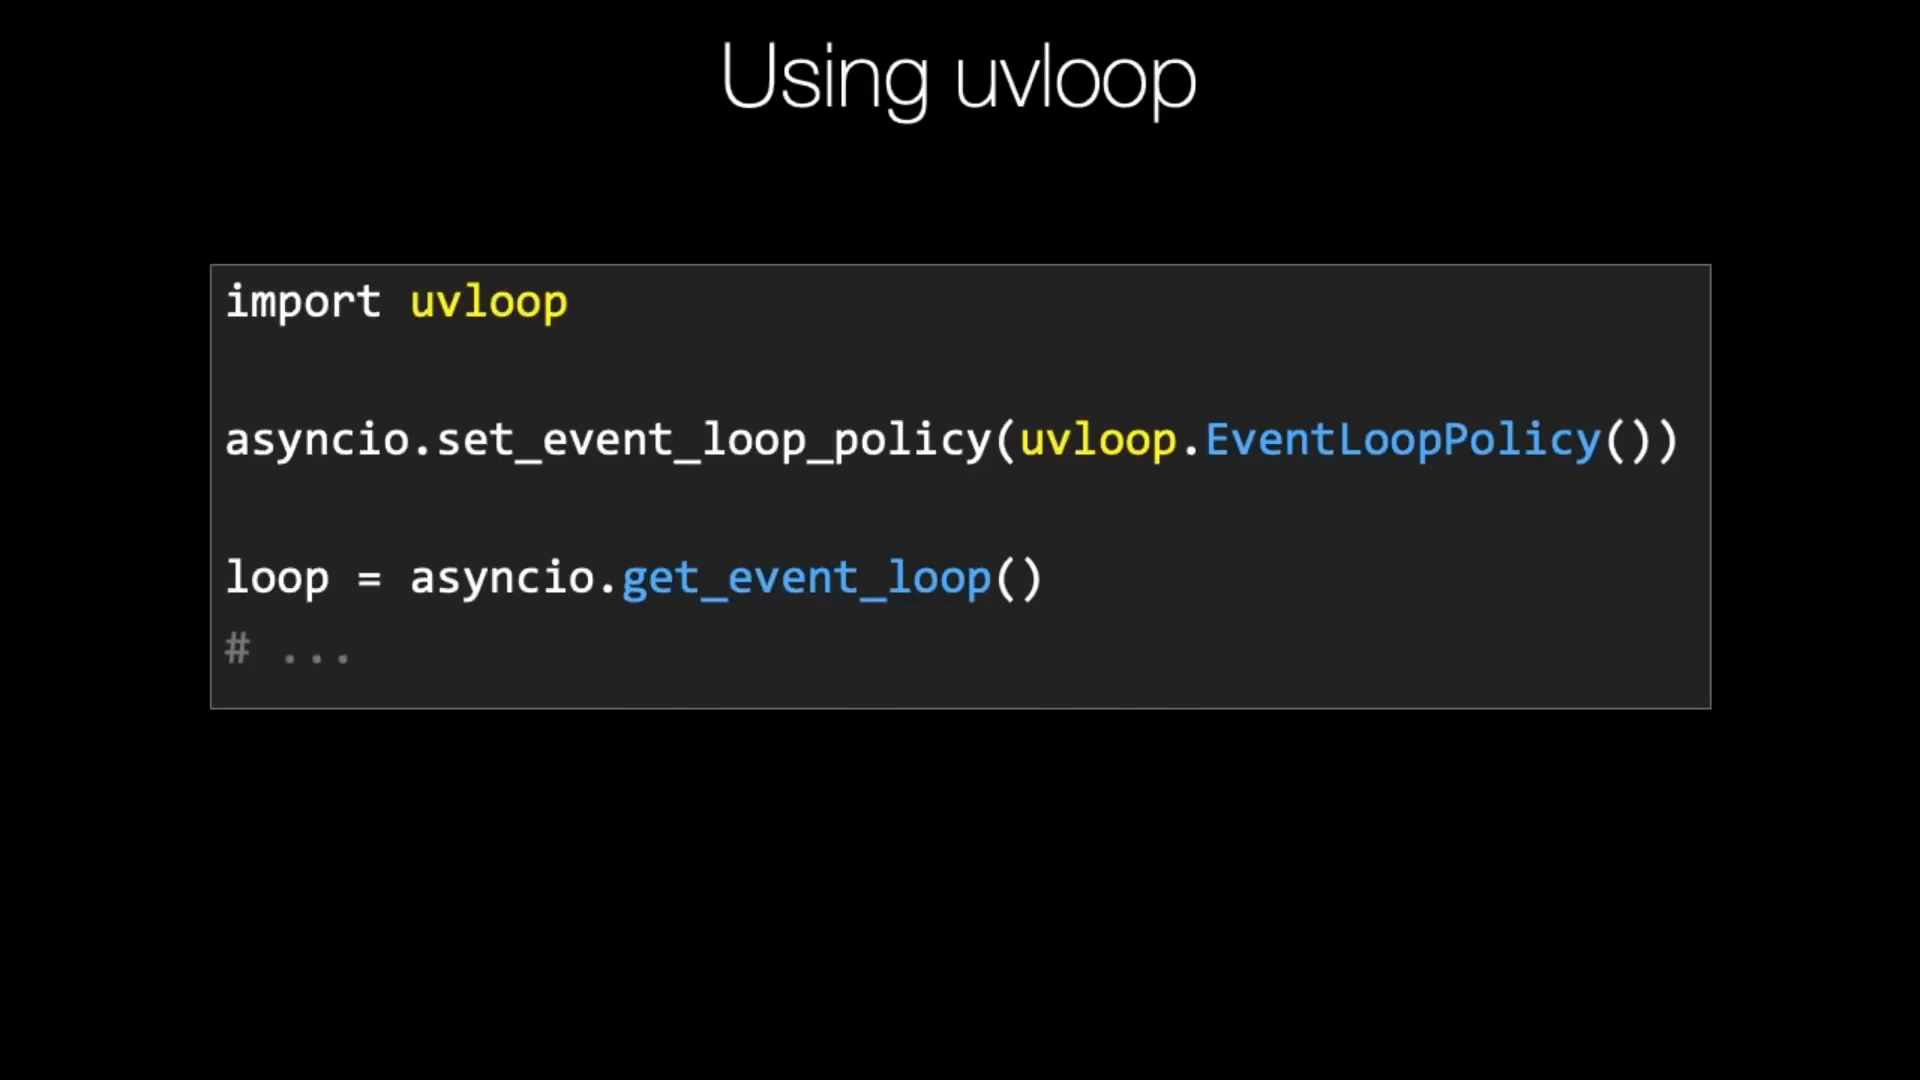 ../../_images/asyncio-eventloop-uvloop-using.png